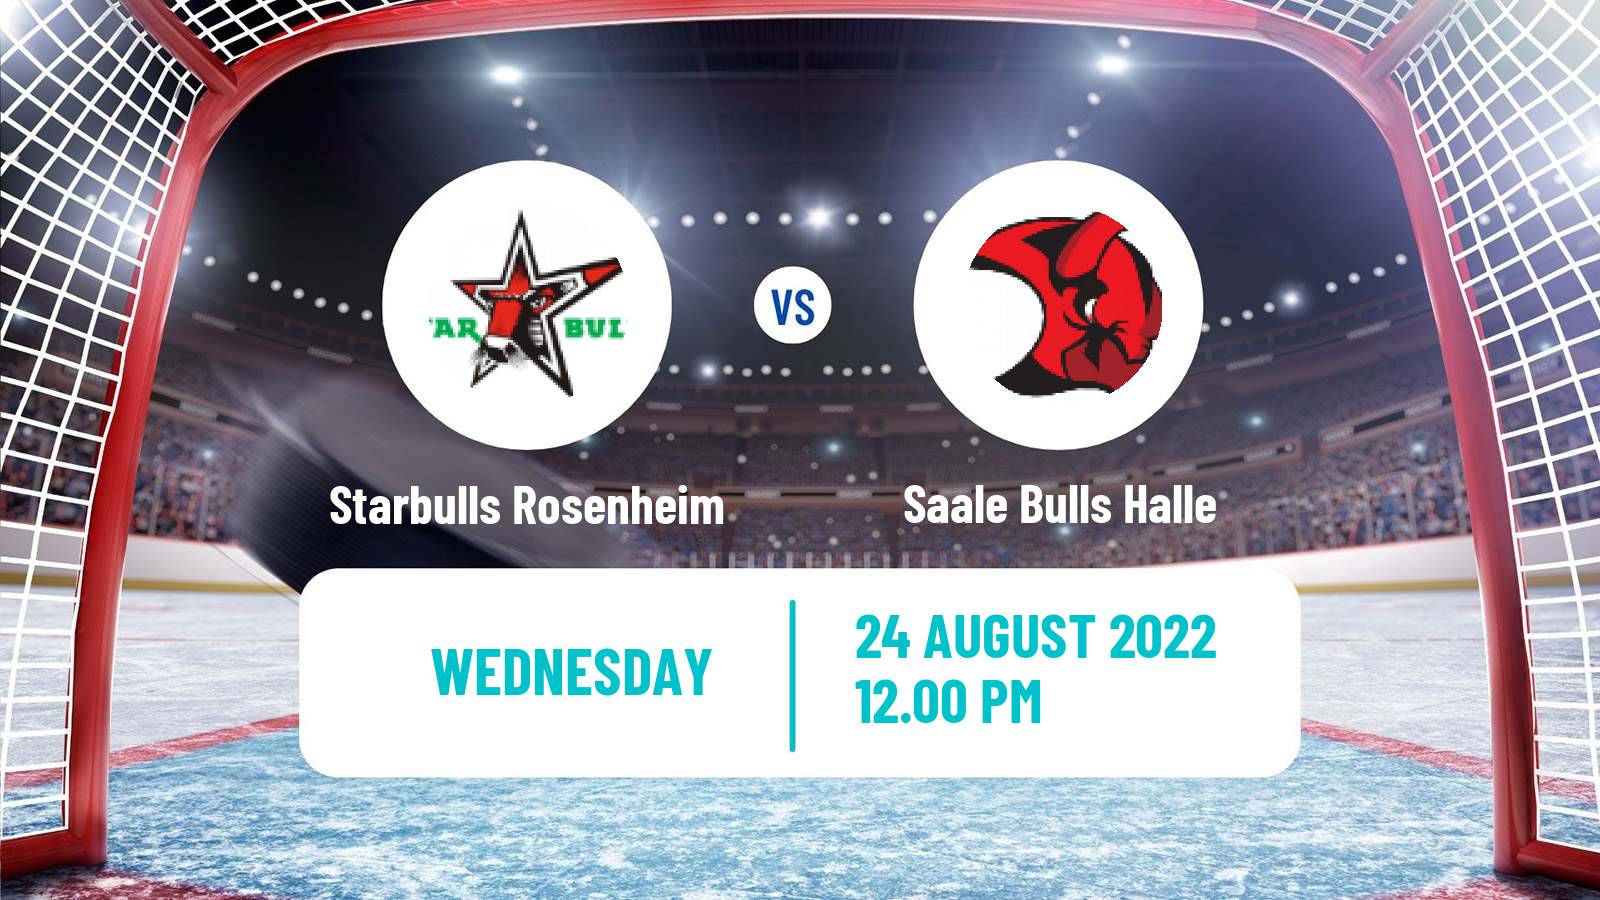 Hockey Club Friendly Ice Hockey Starbulls Rosenheim - Saale Bulls Halle